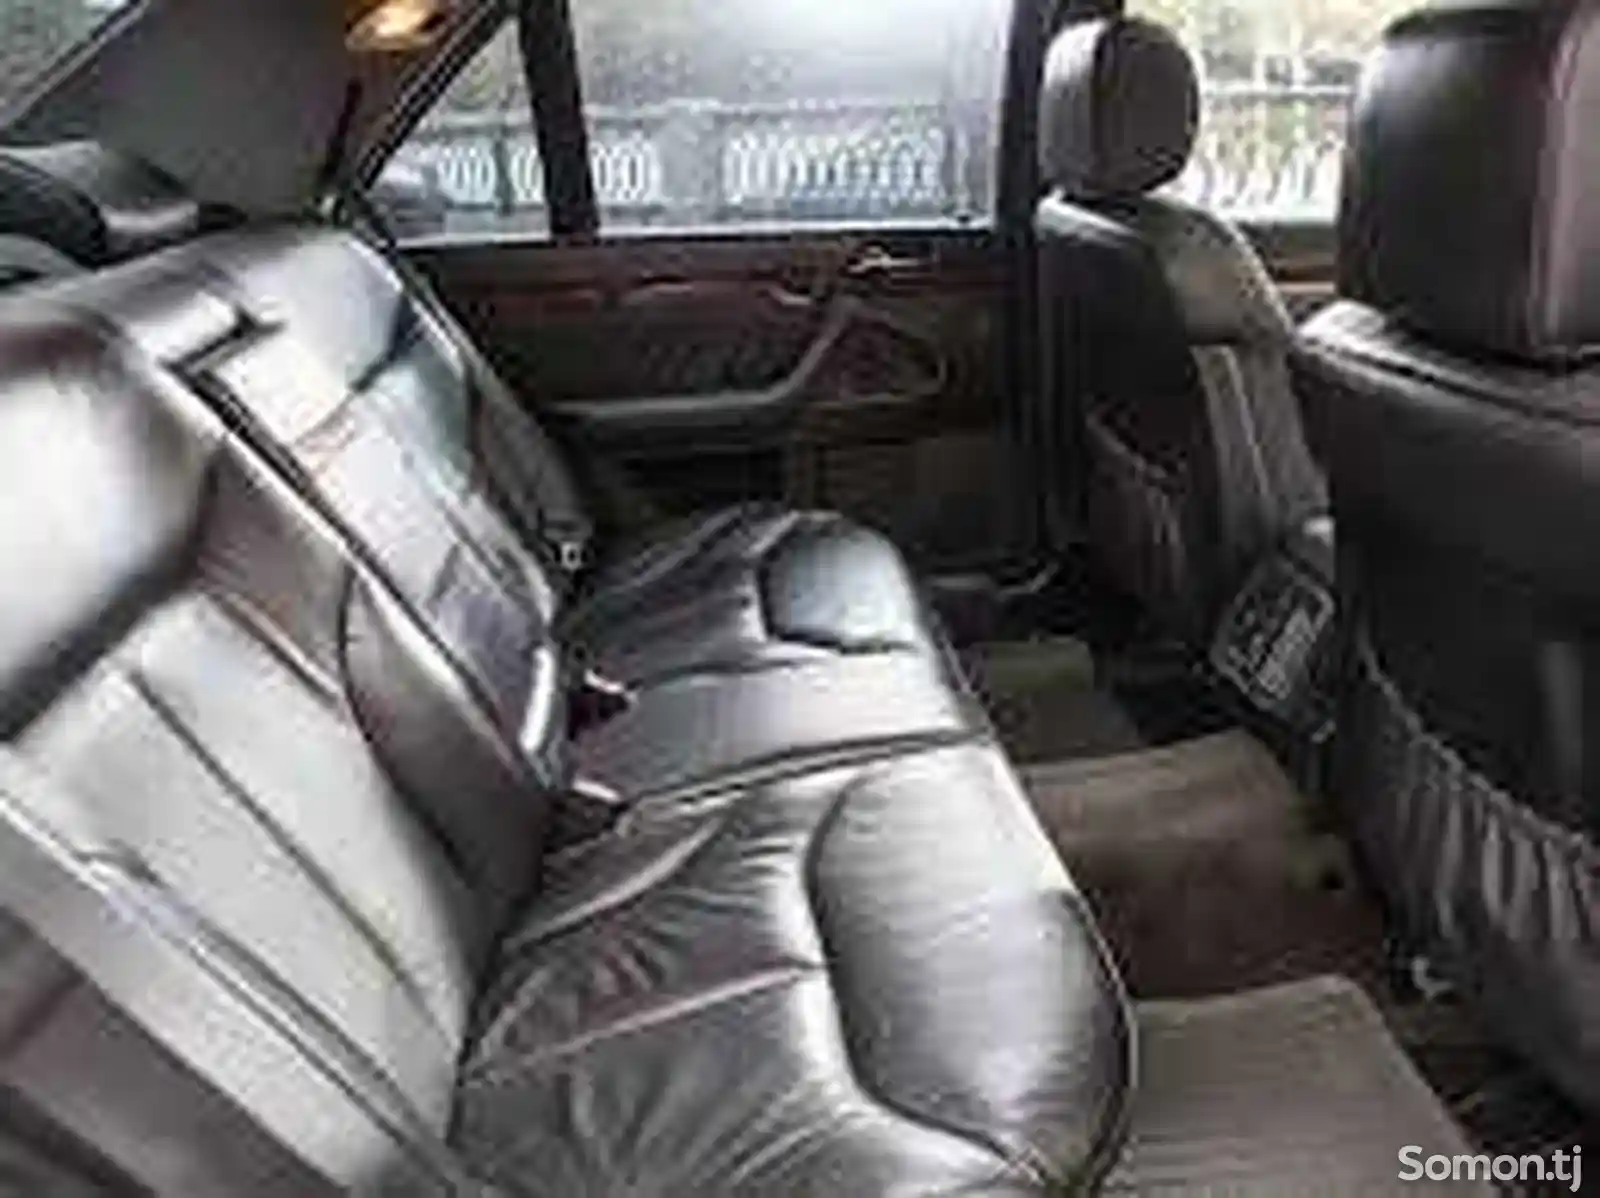 Задние сиденья на MercedesBenz w140